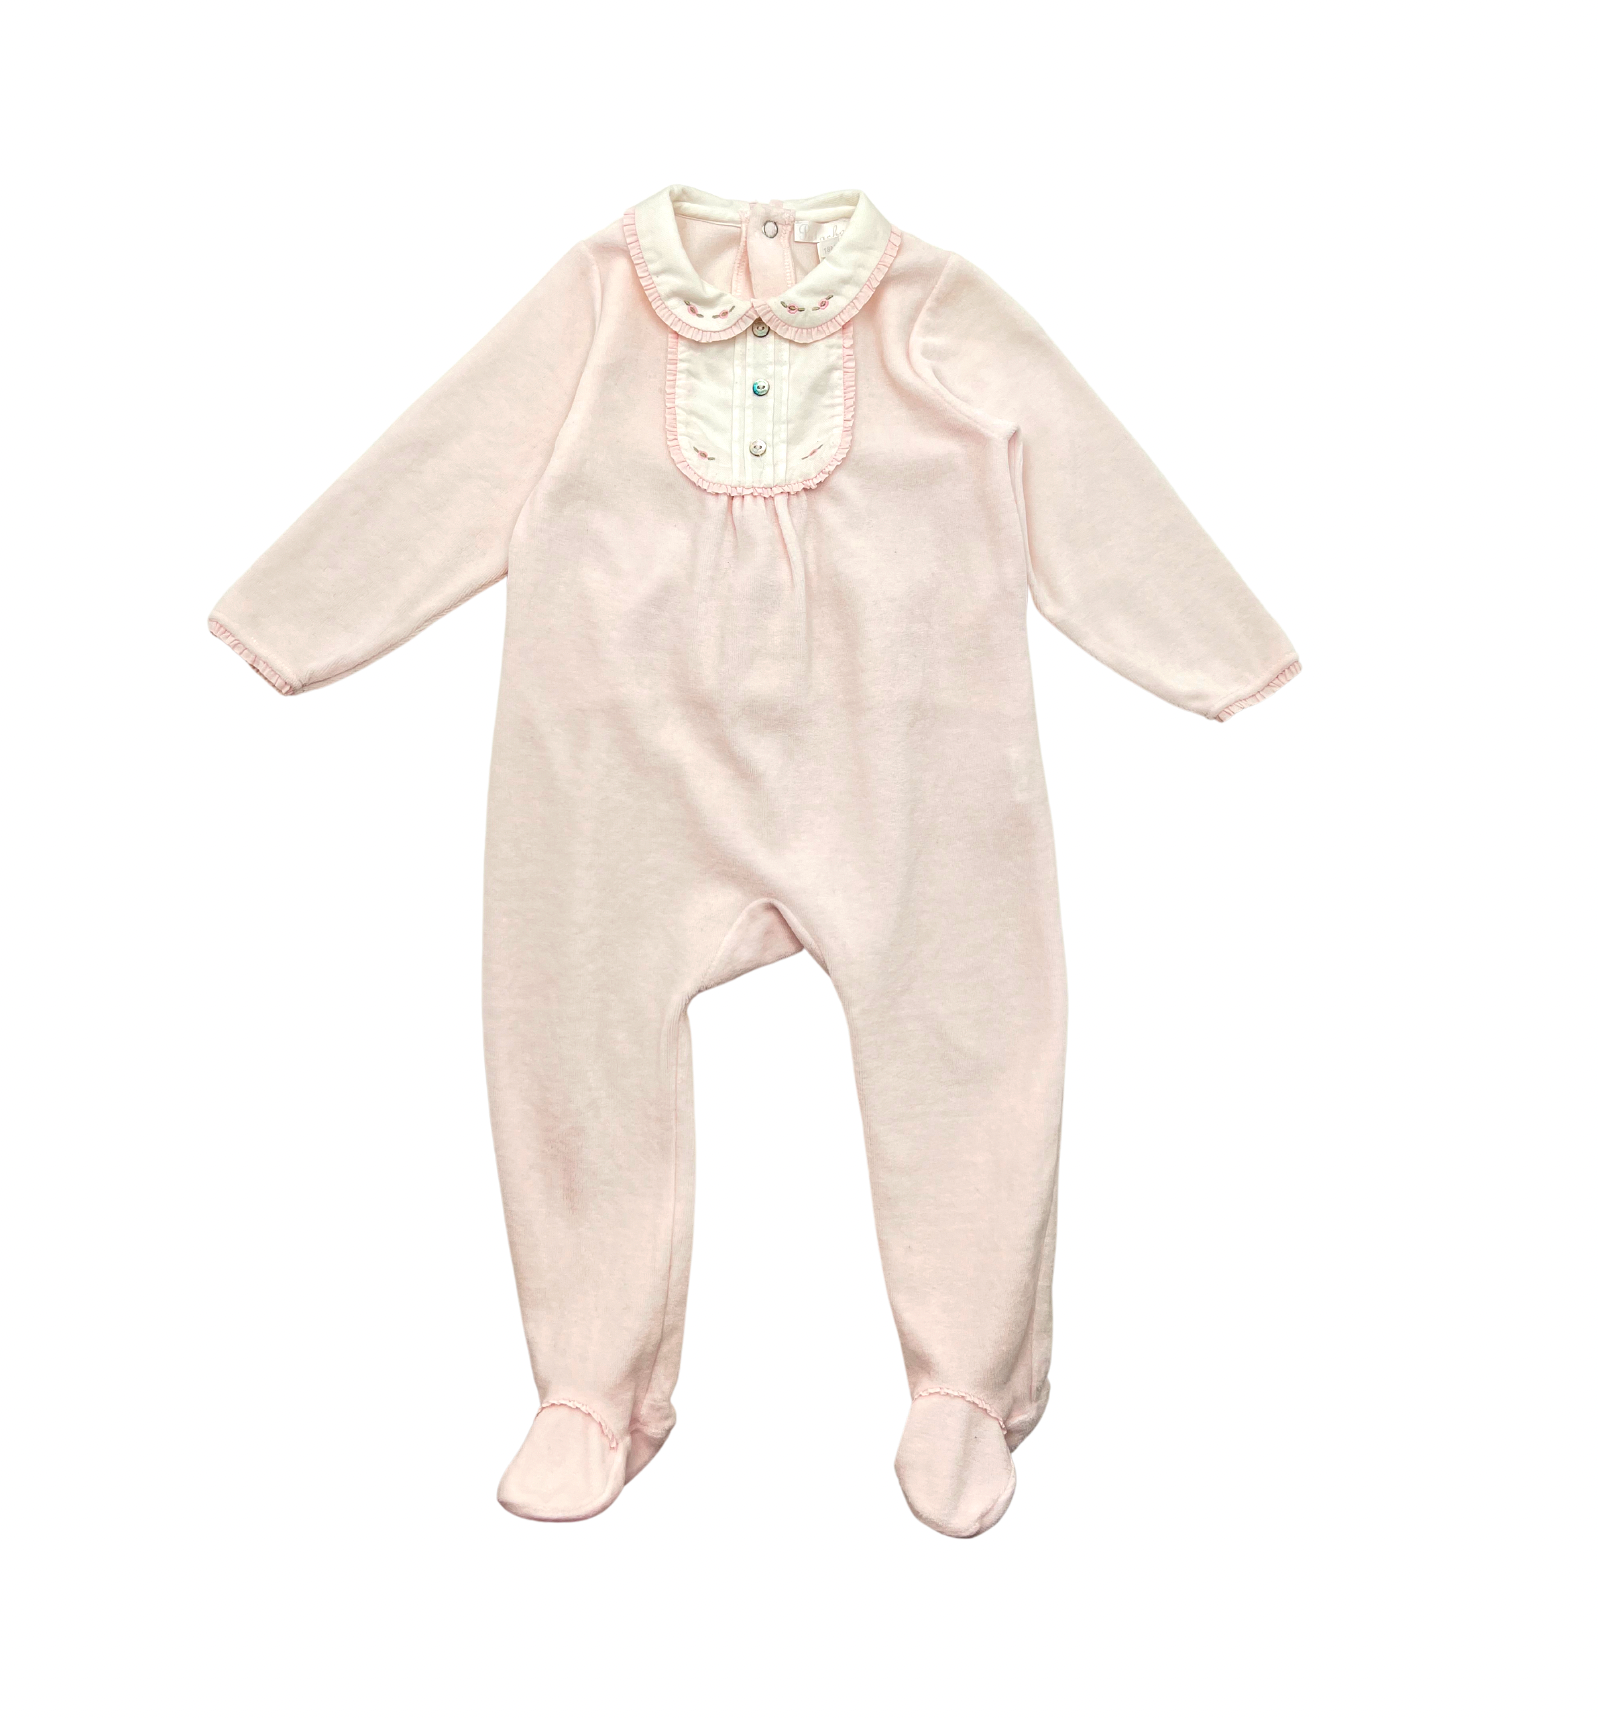 PATACHOU - Pyjama rose pâle - 18 mois